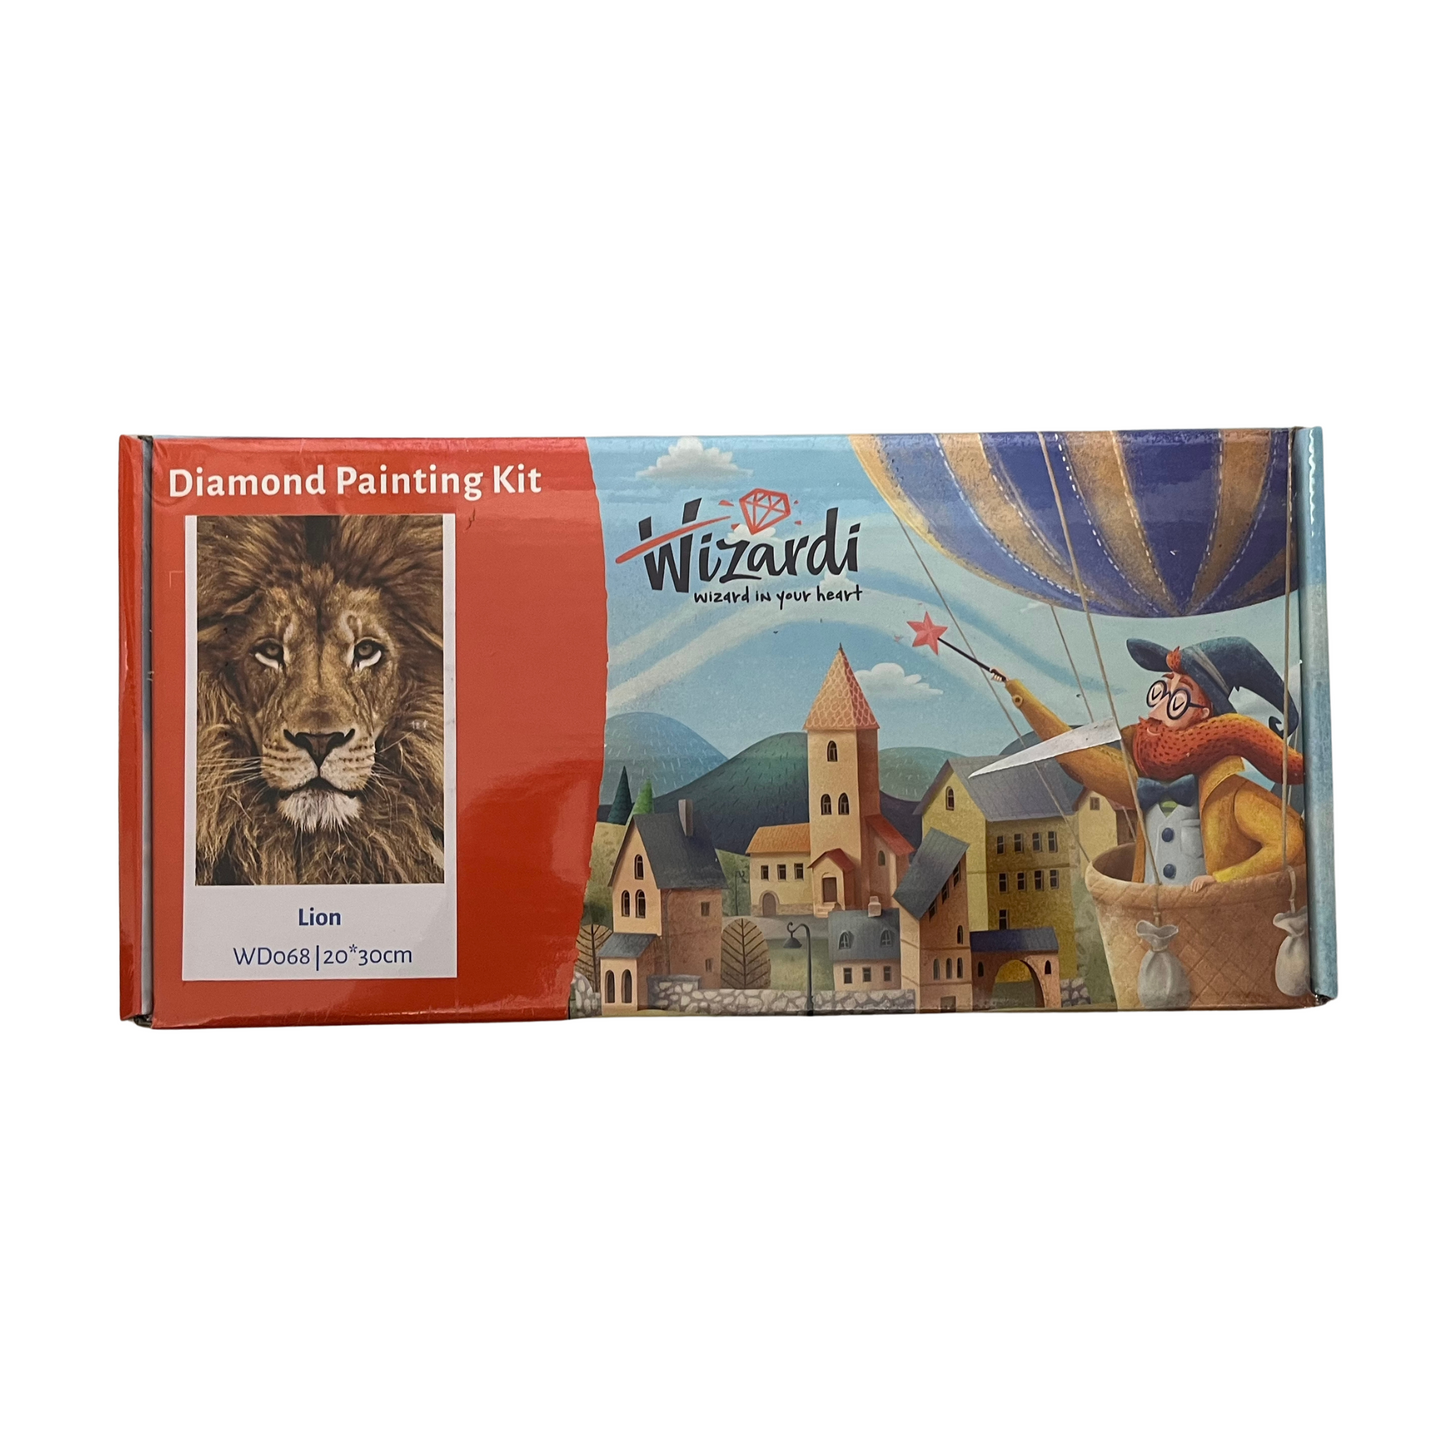 Lion Diamond Painting Kit